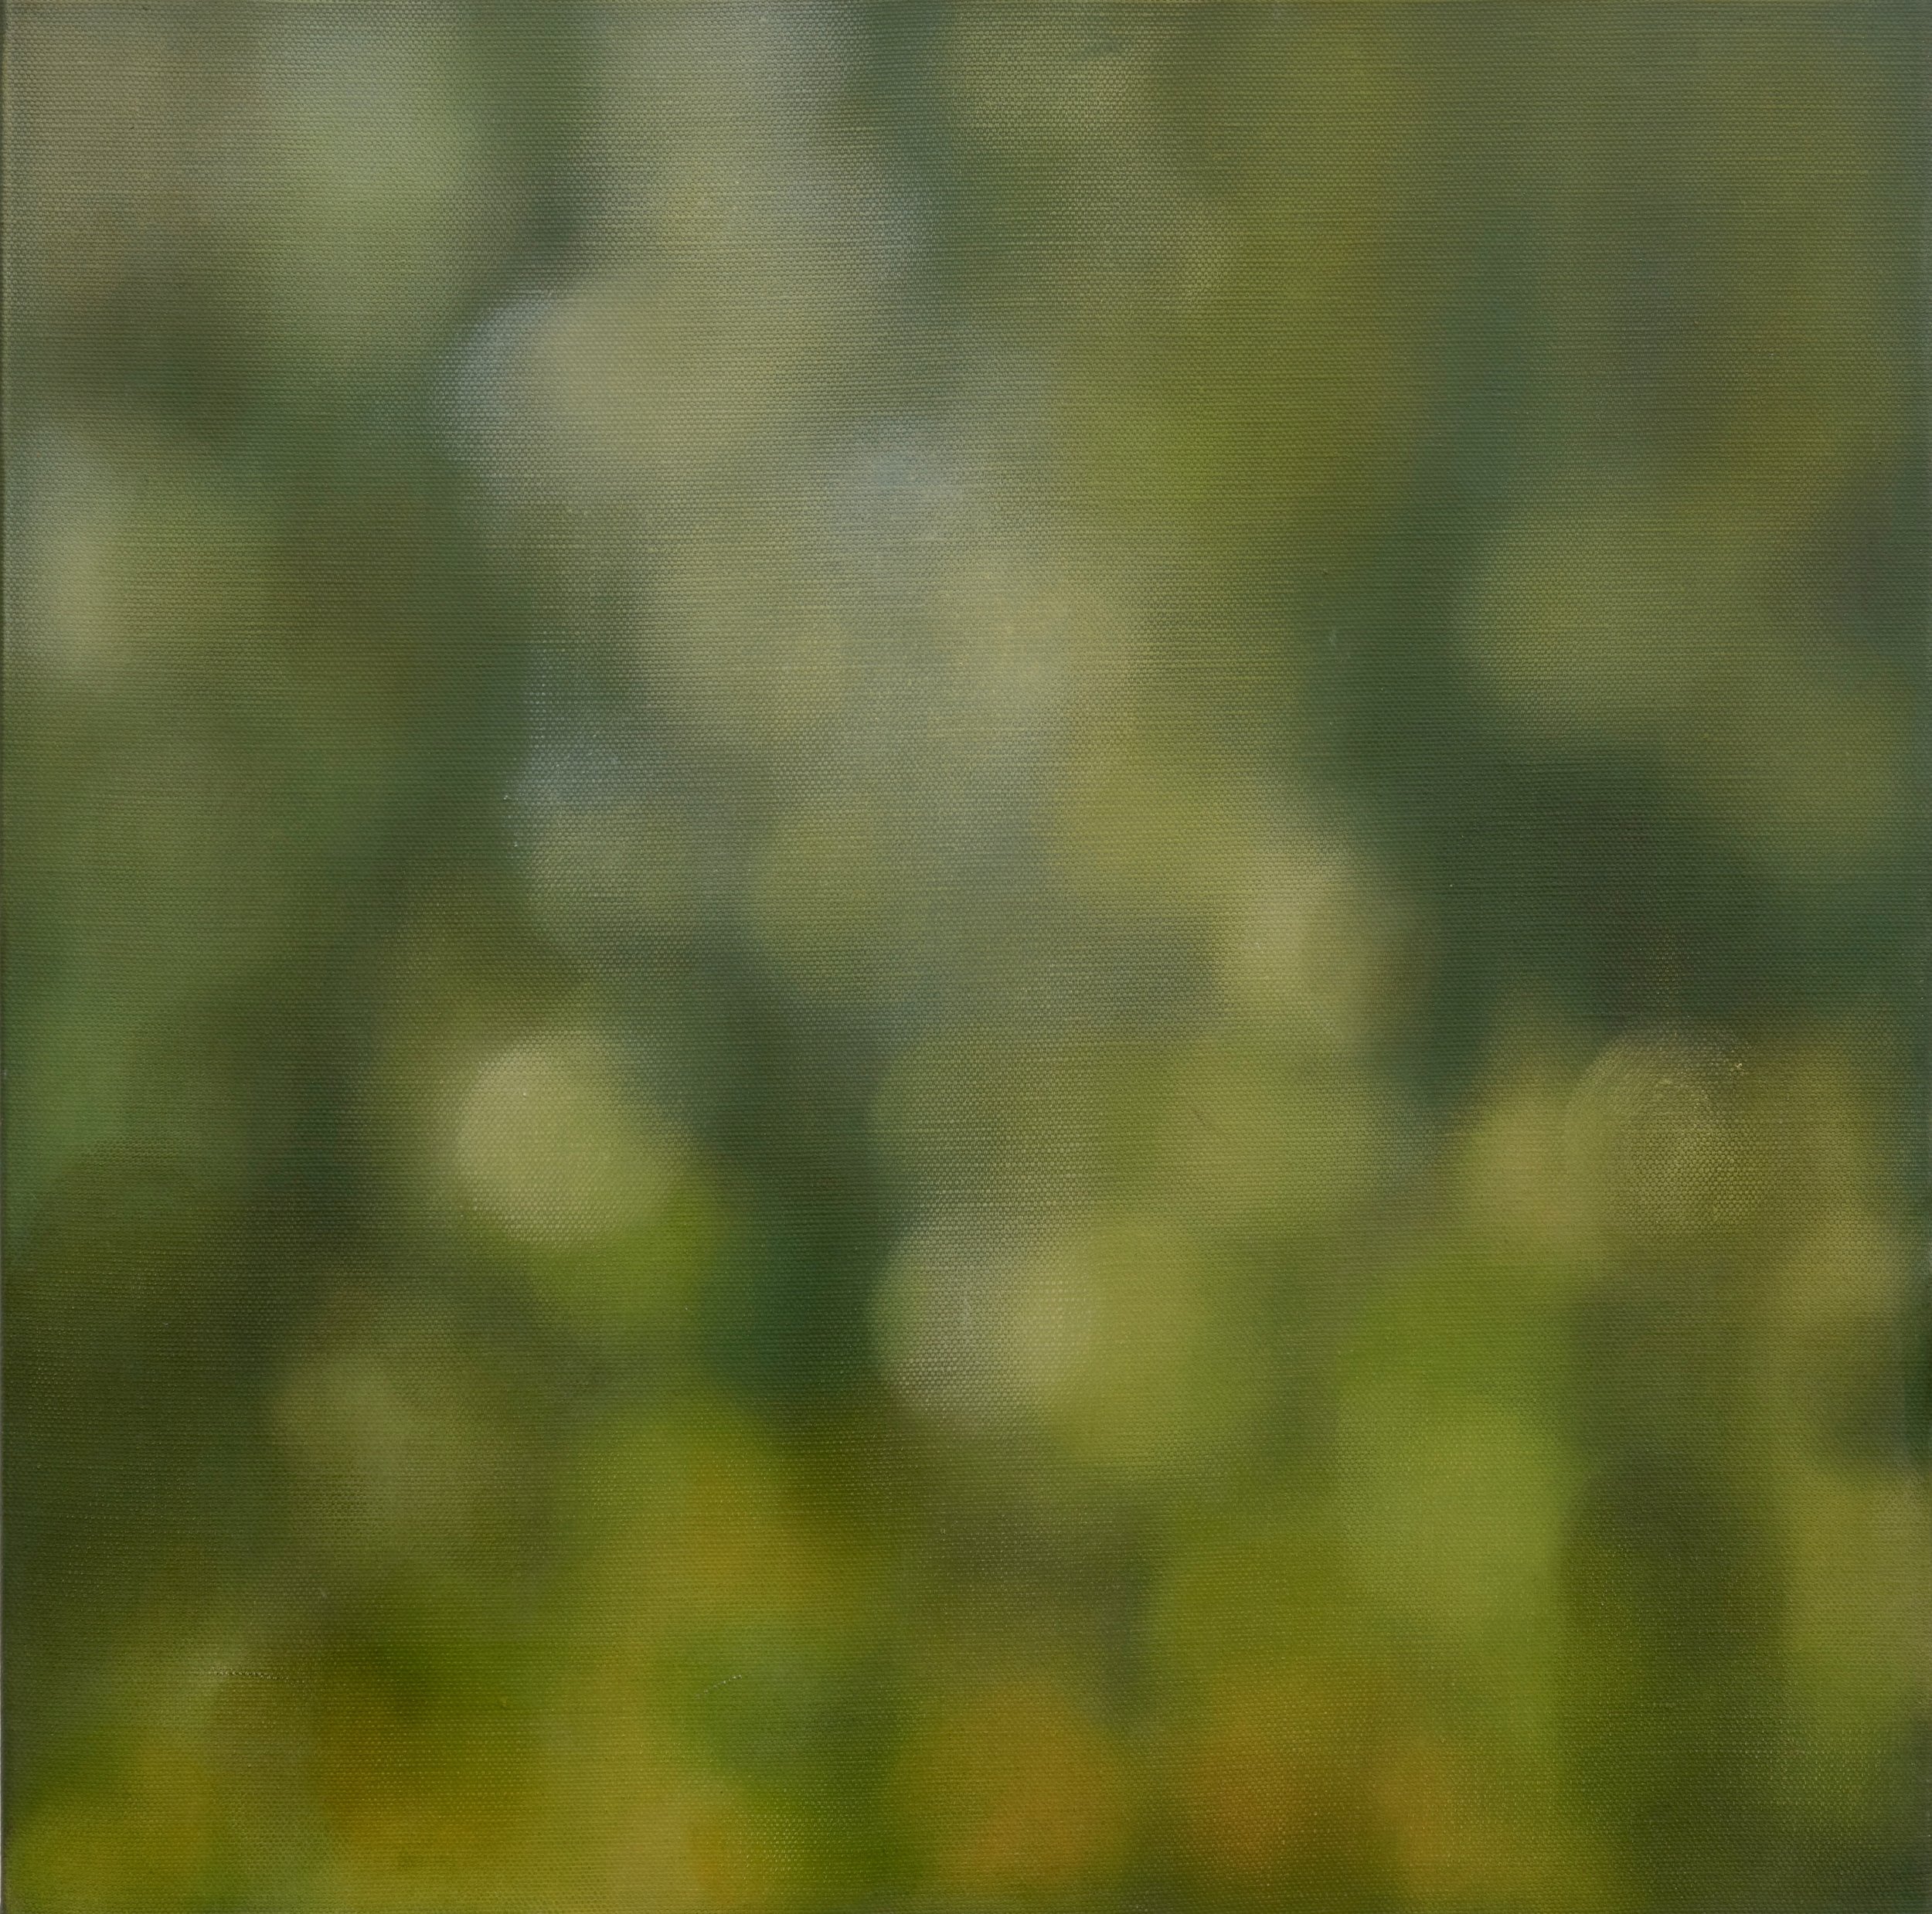 Descending Green Light 2010 Oil on Linen Canvas 61 x 61 cm